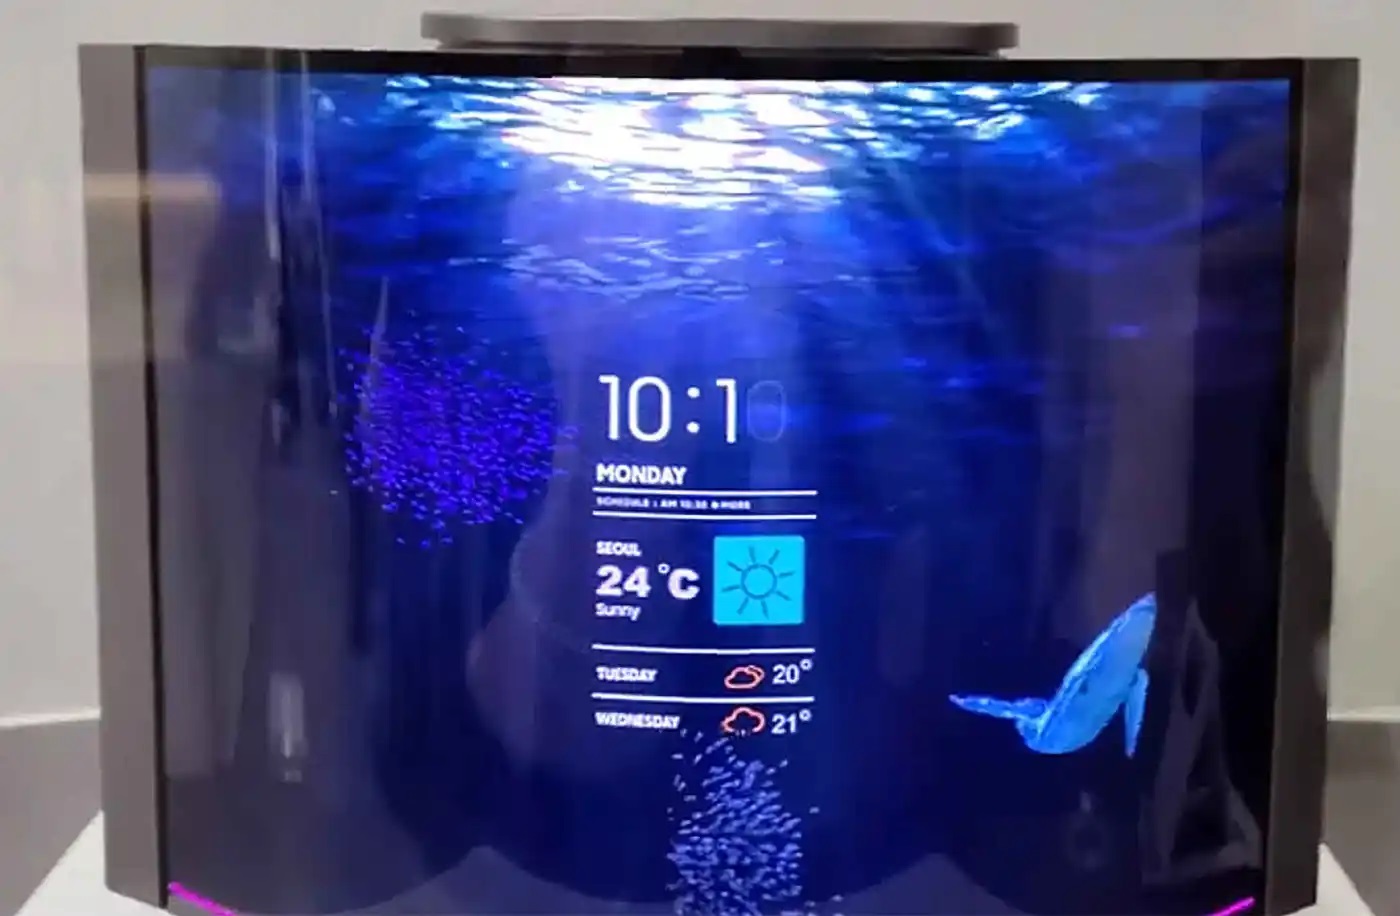 Samsung stellt formveränderlichen intelligenten Lautsprecher mit flexiblem 12,4-Zoll-Display vor